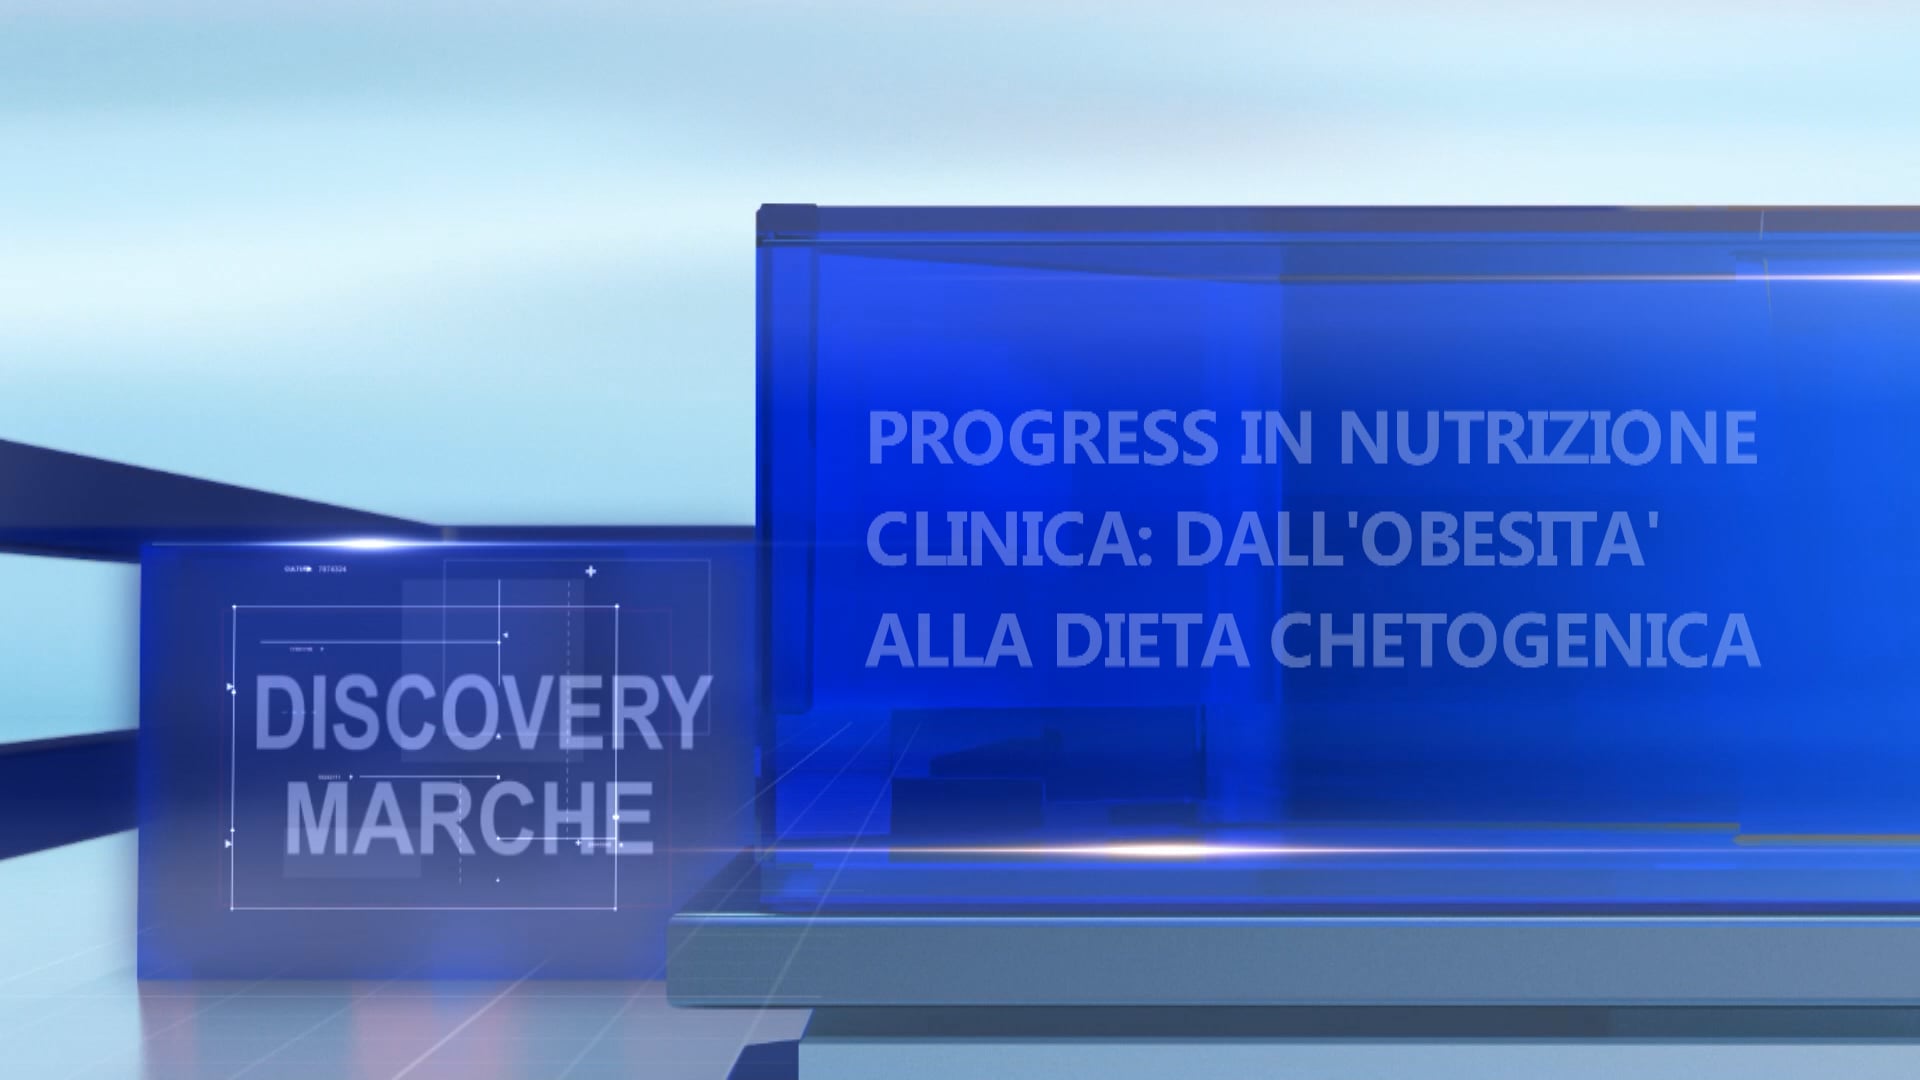 Progress in nutrizione clinica: dall'obesità alla dieta chetogenica - VIDEO